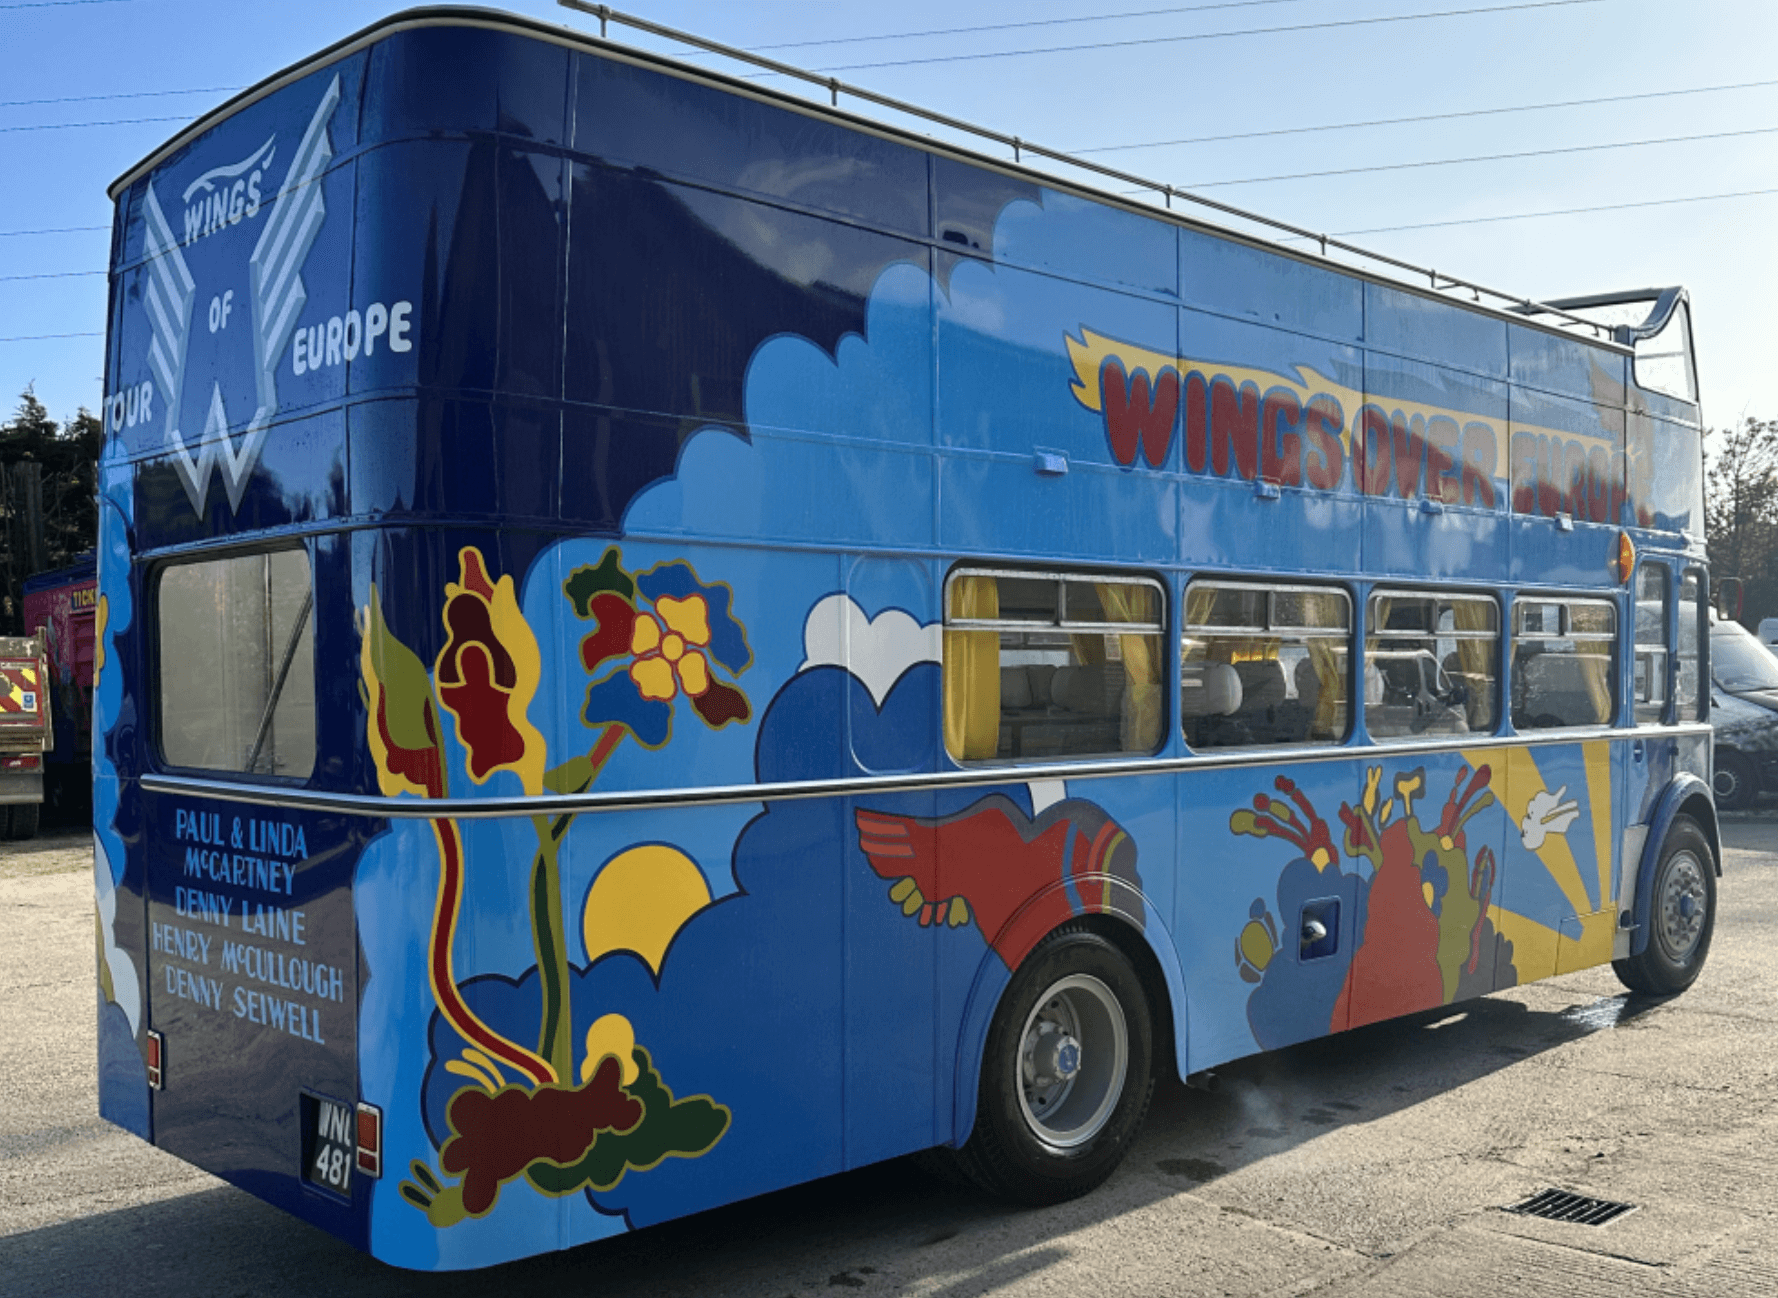 Paul McCartney’s Wings Tour Bristol double-decker bus